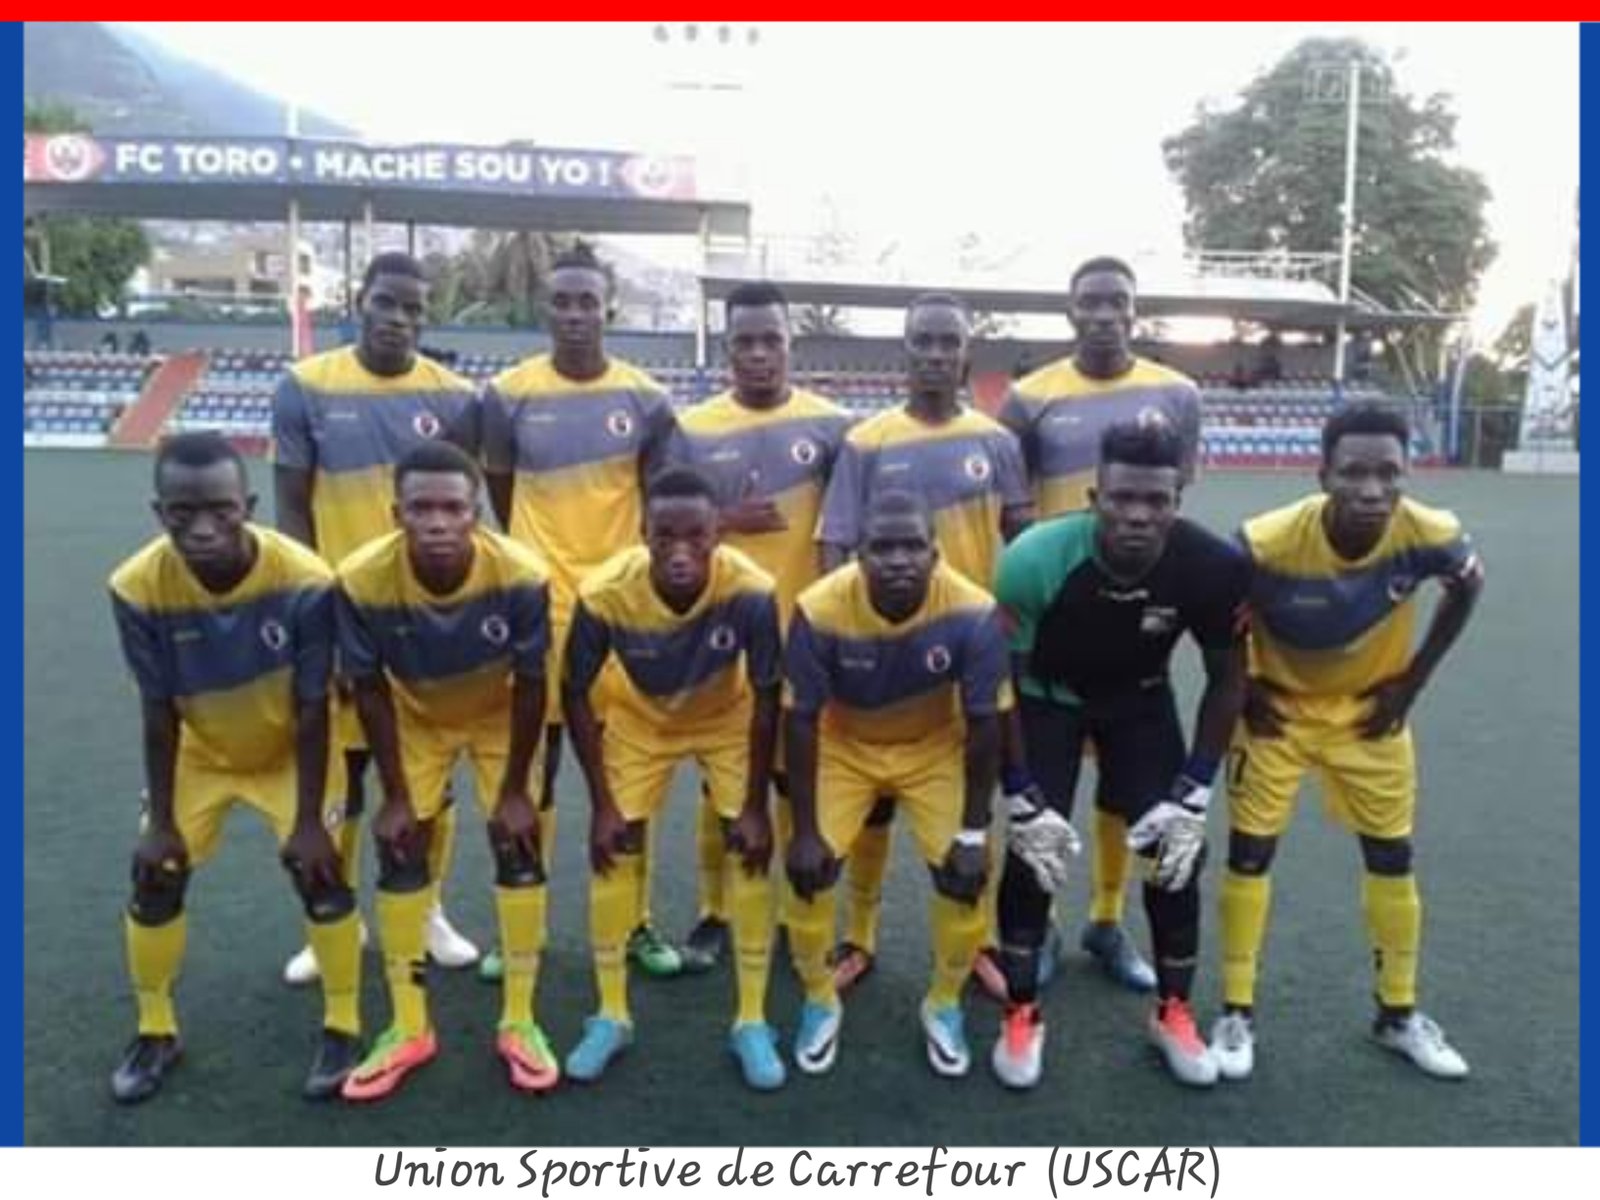 Haïti-Football: Yon latriye mezi tou nèf pou chanpyona dezyèm divizyon an